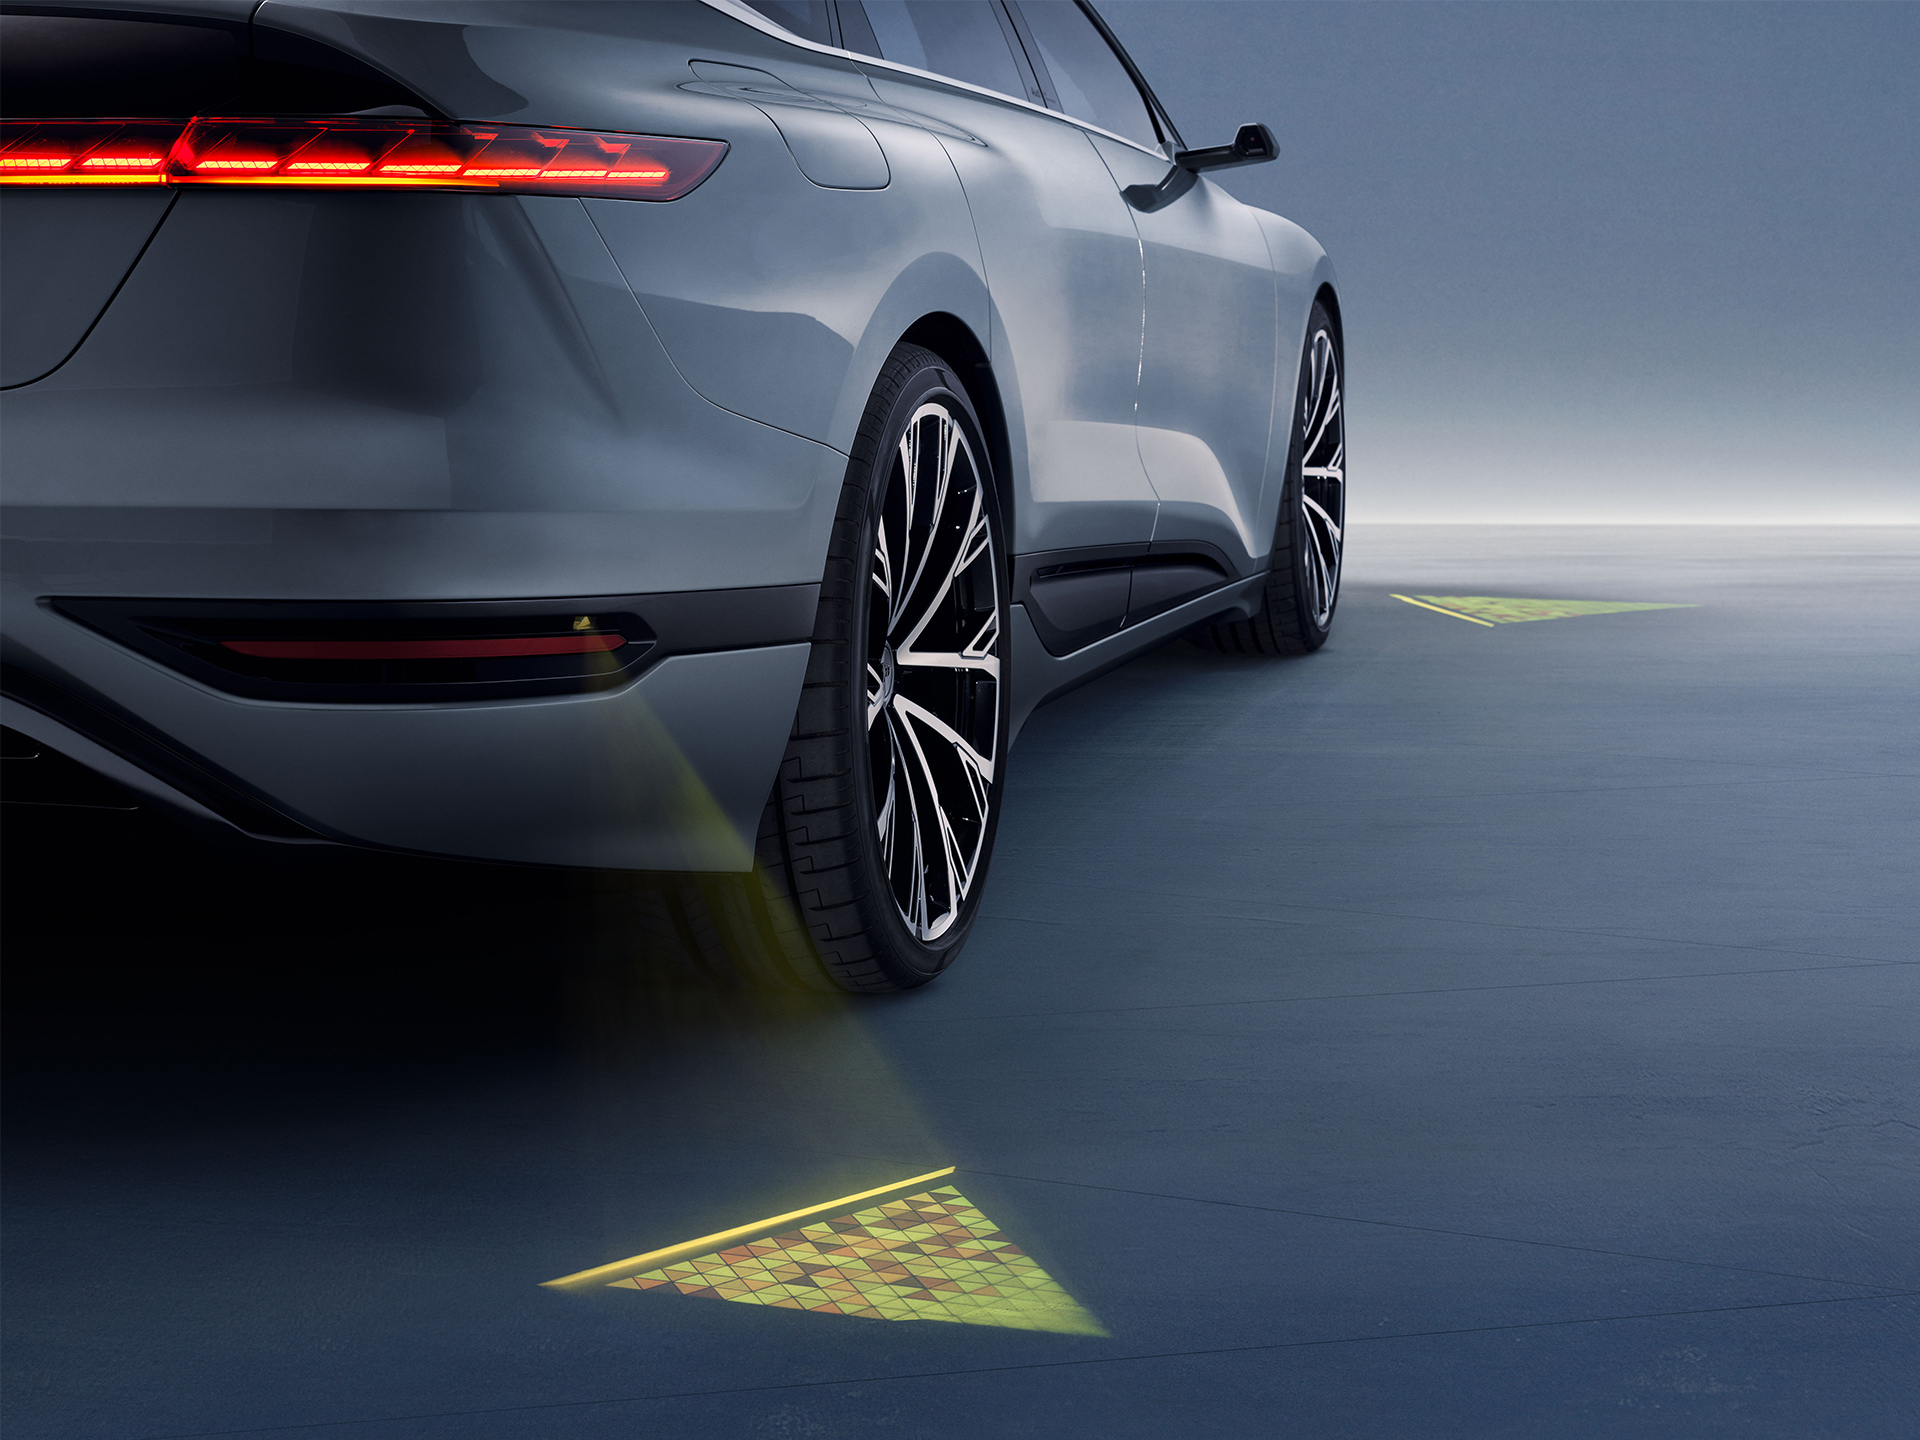 LED-Projektoren am Fahrzeug erzeugen leuchtende Dreiecke auf dem Boden. 